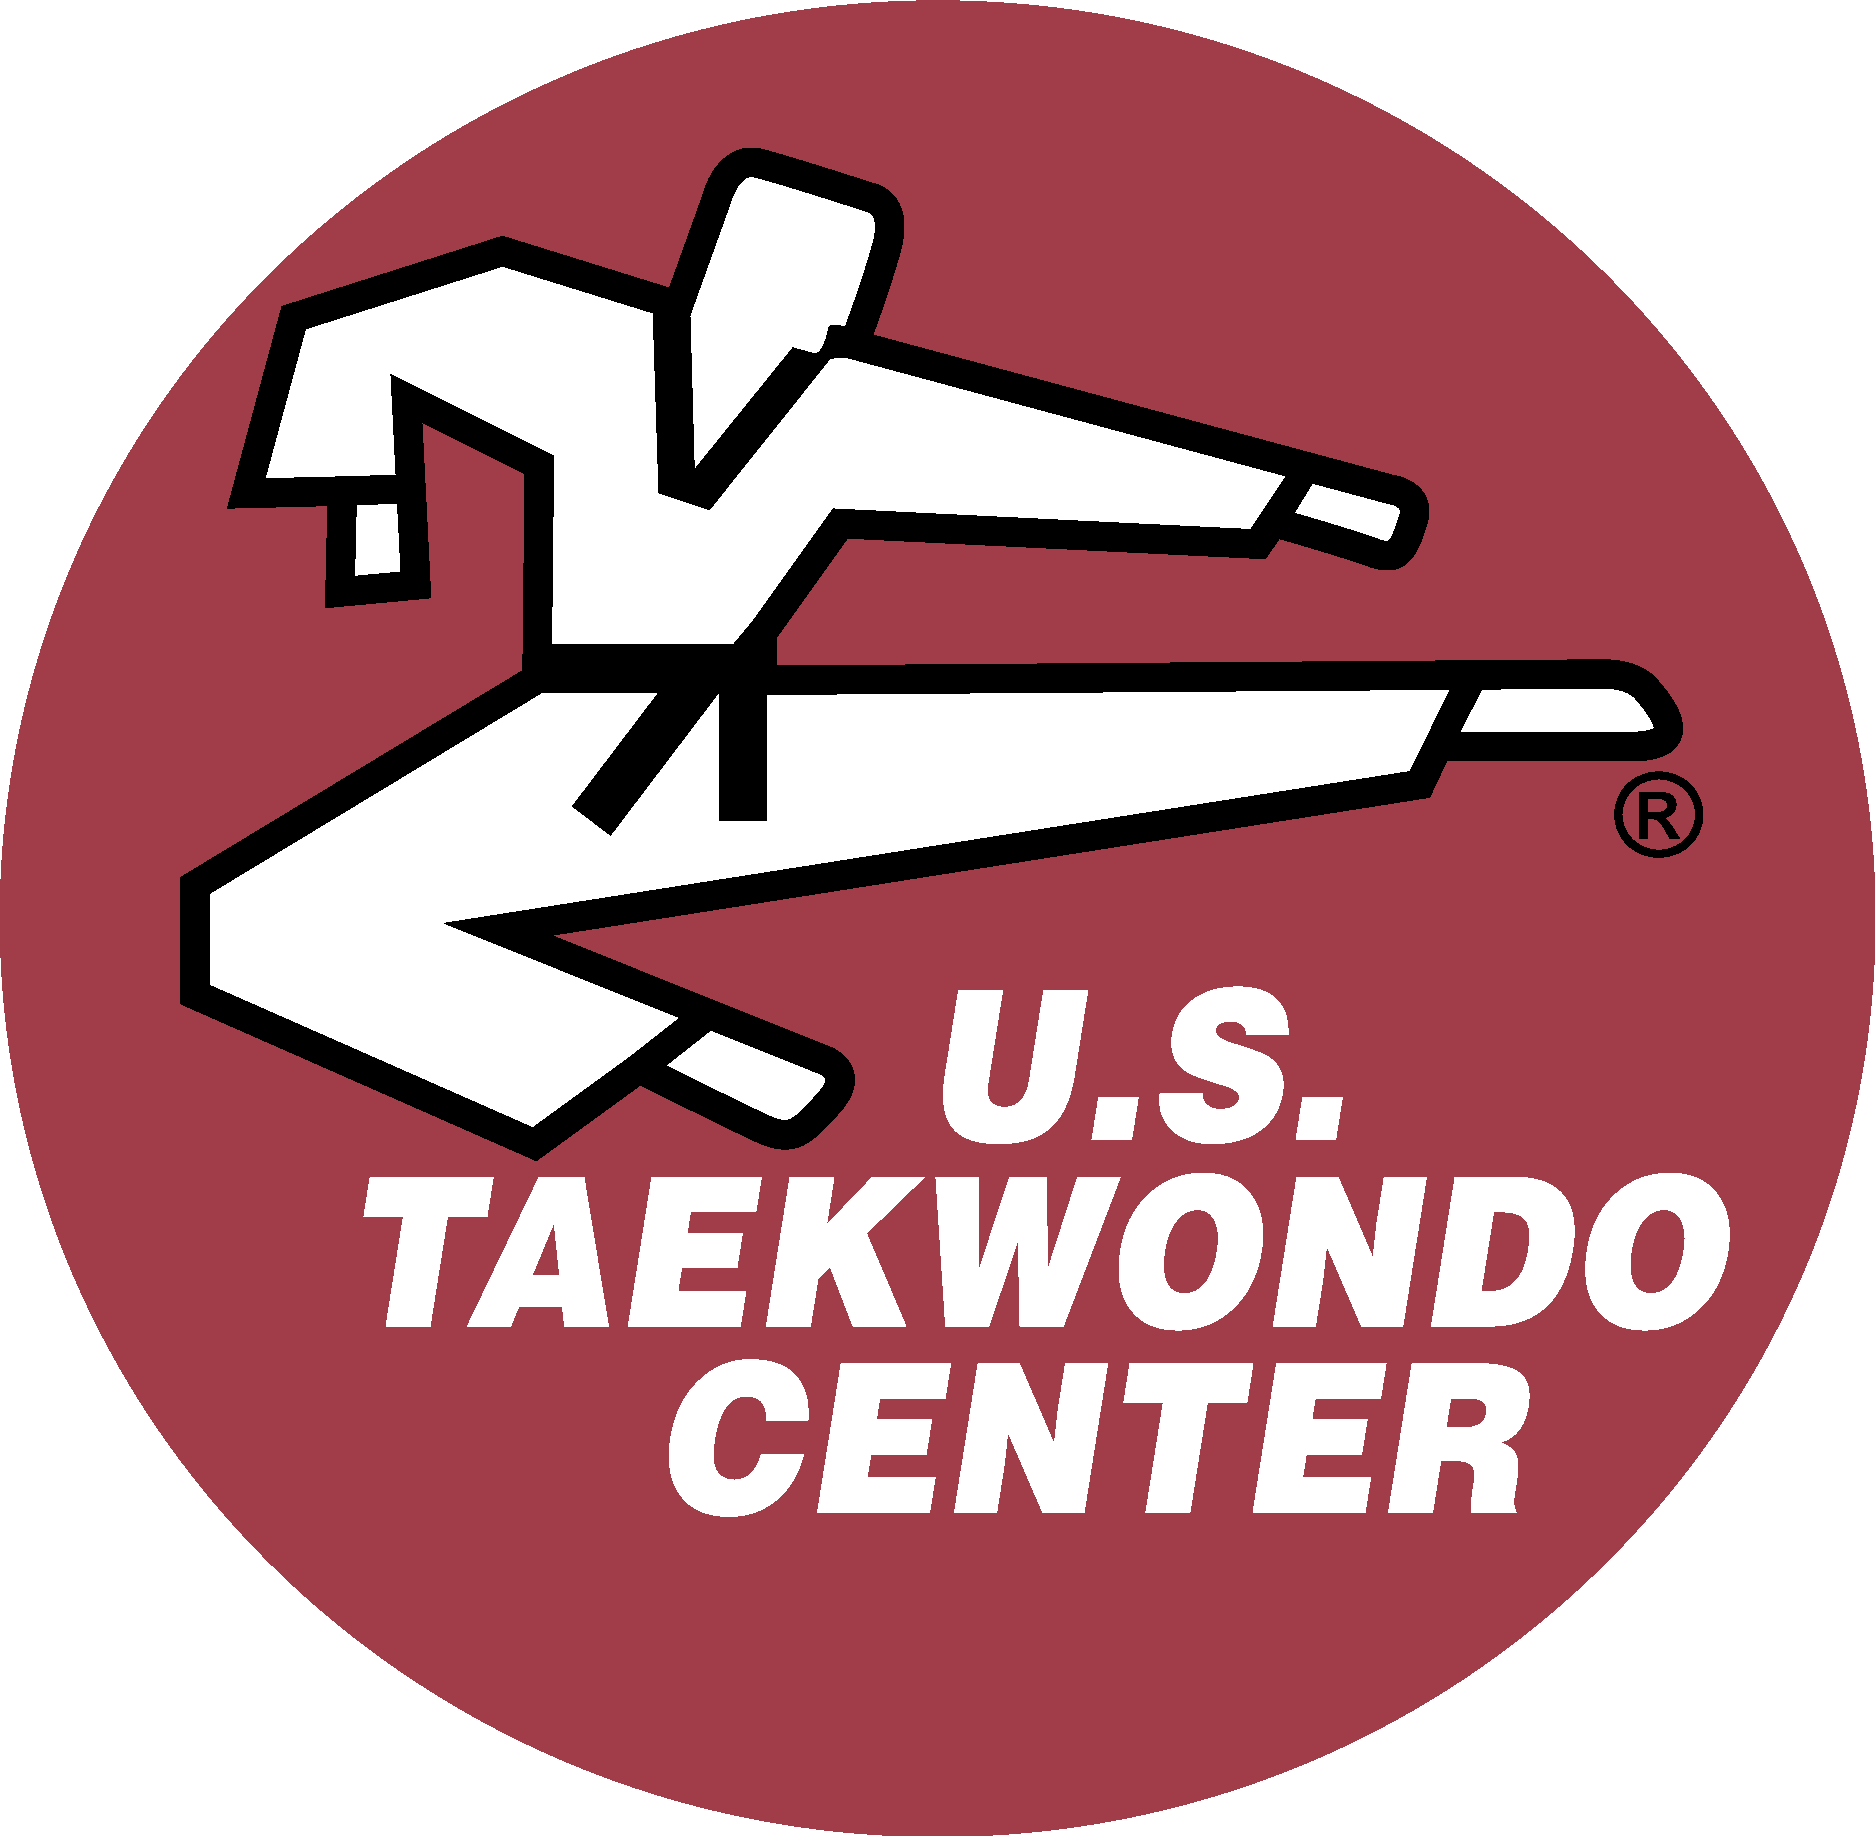 U.S. Taekwondo Center Logo Vector